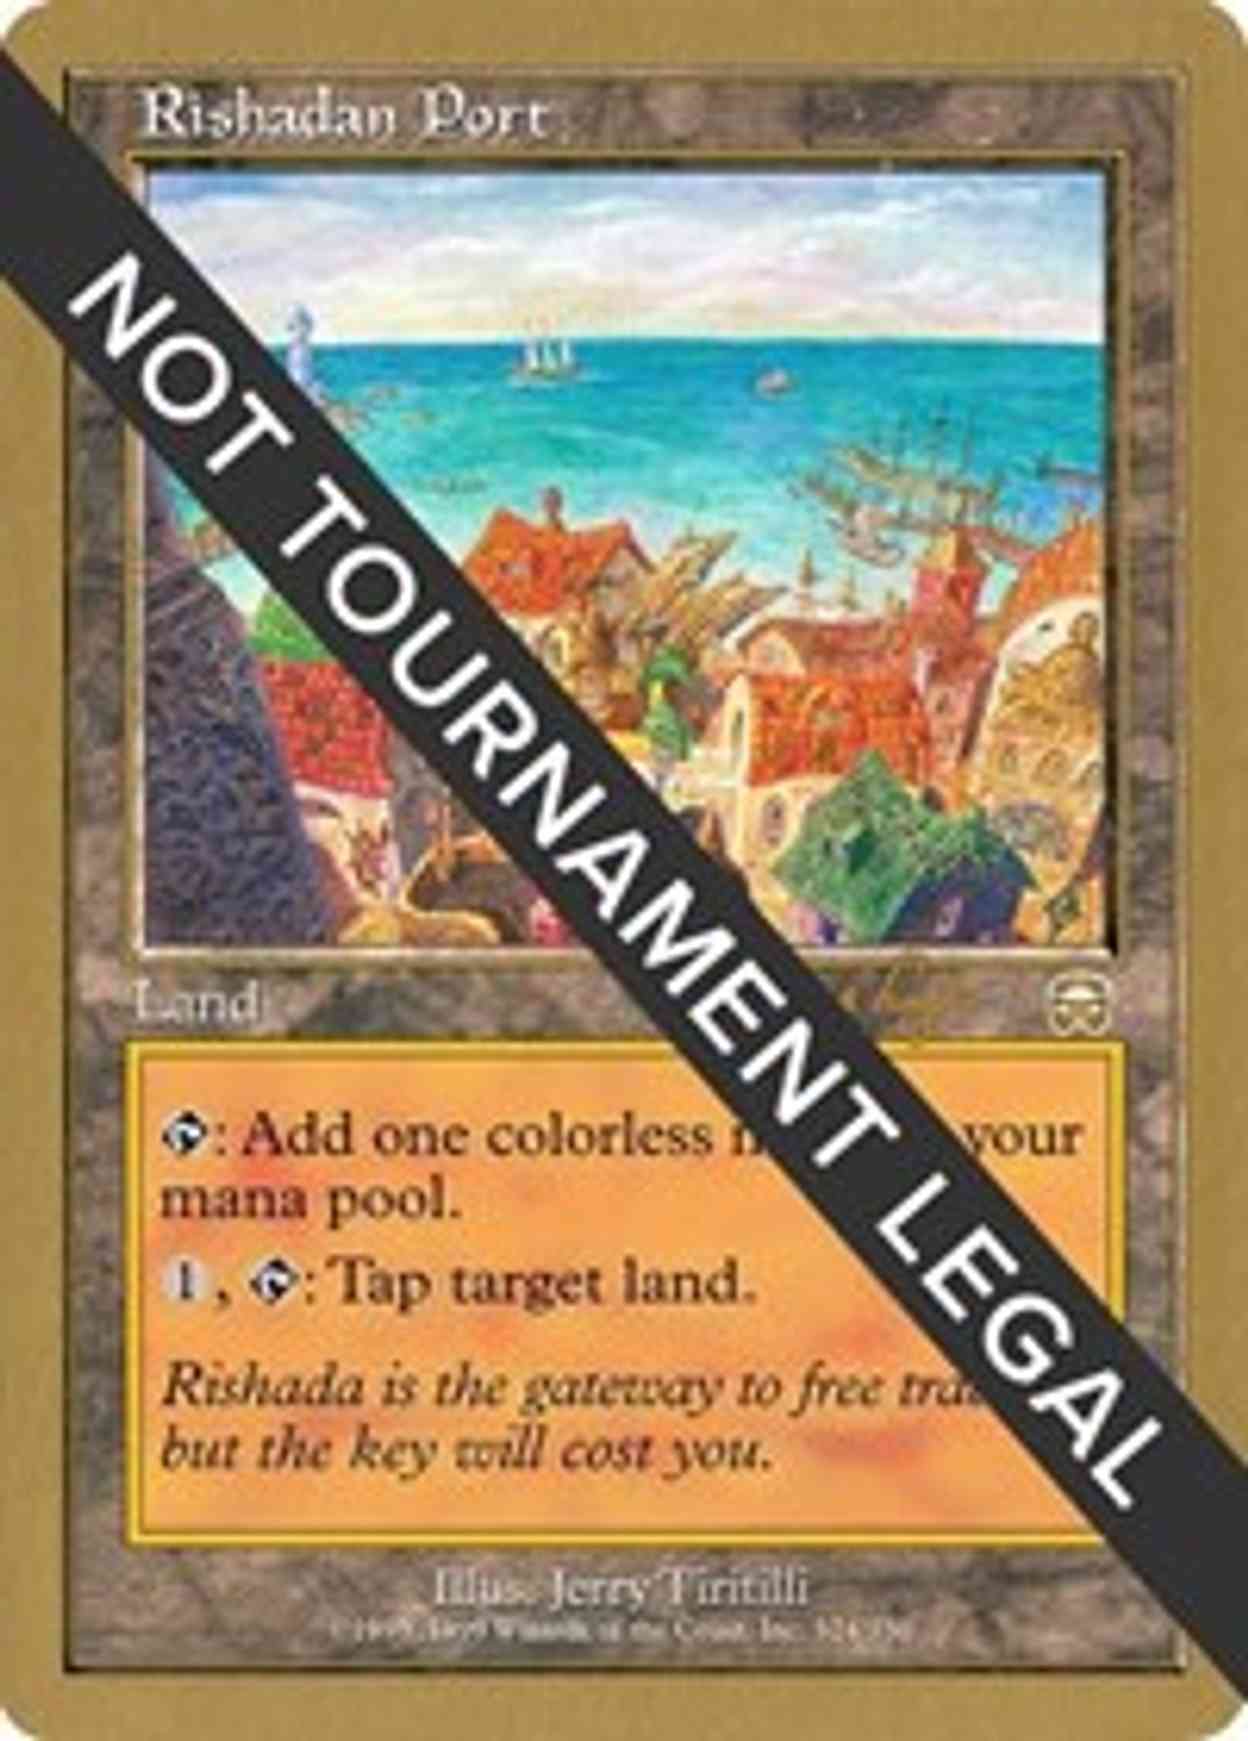 Rishadan Port - 2001 Tom van de Logt (MMQ) magic card front